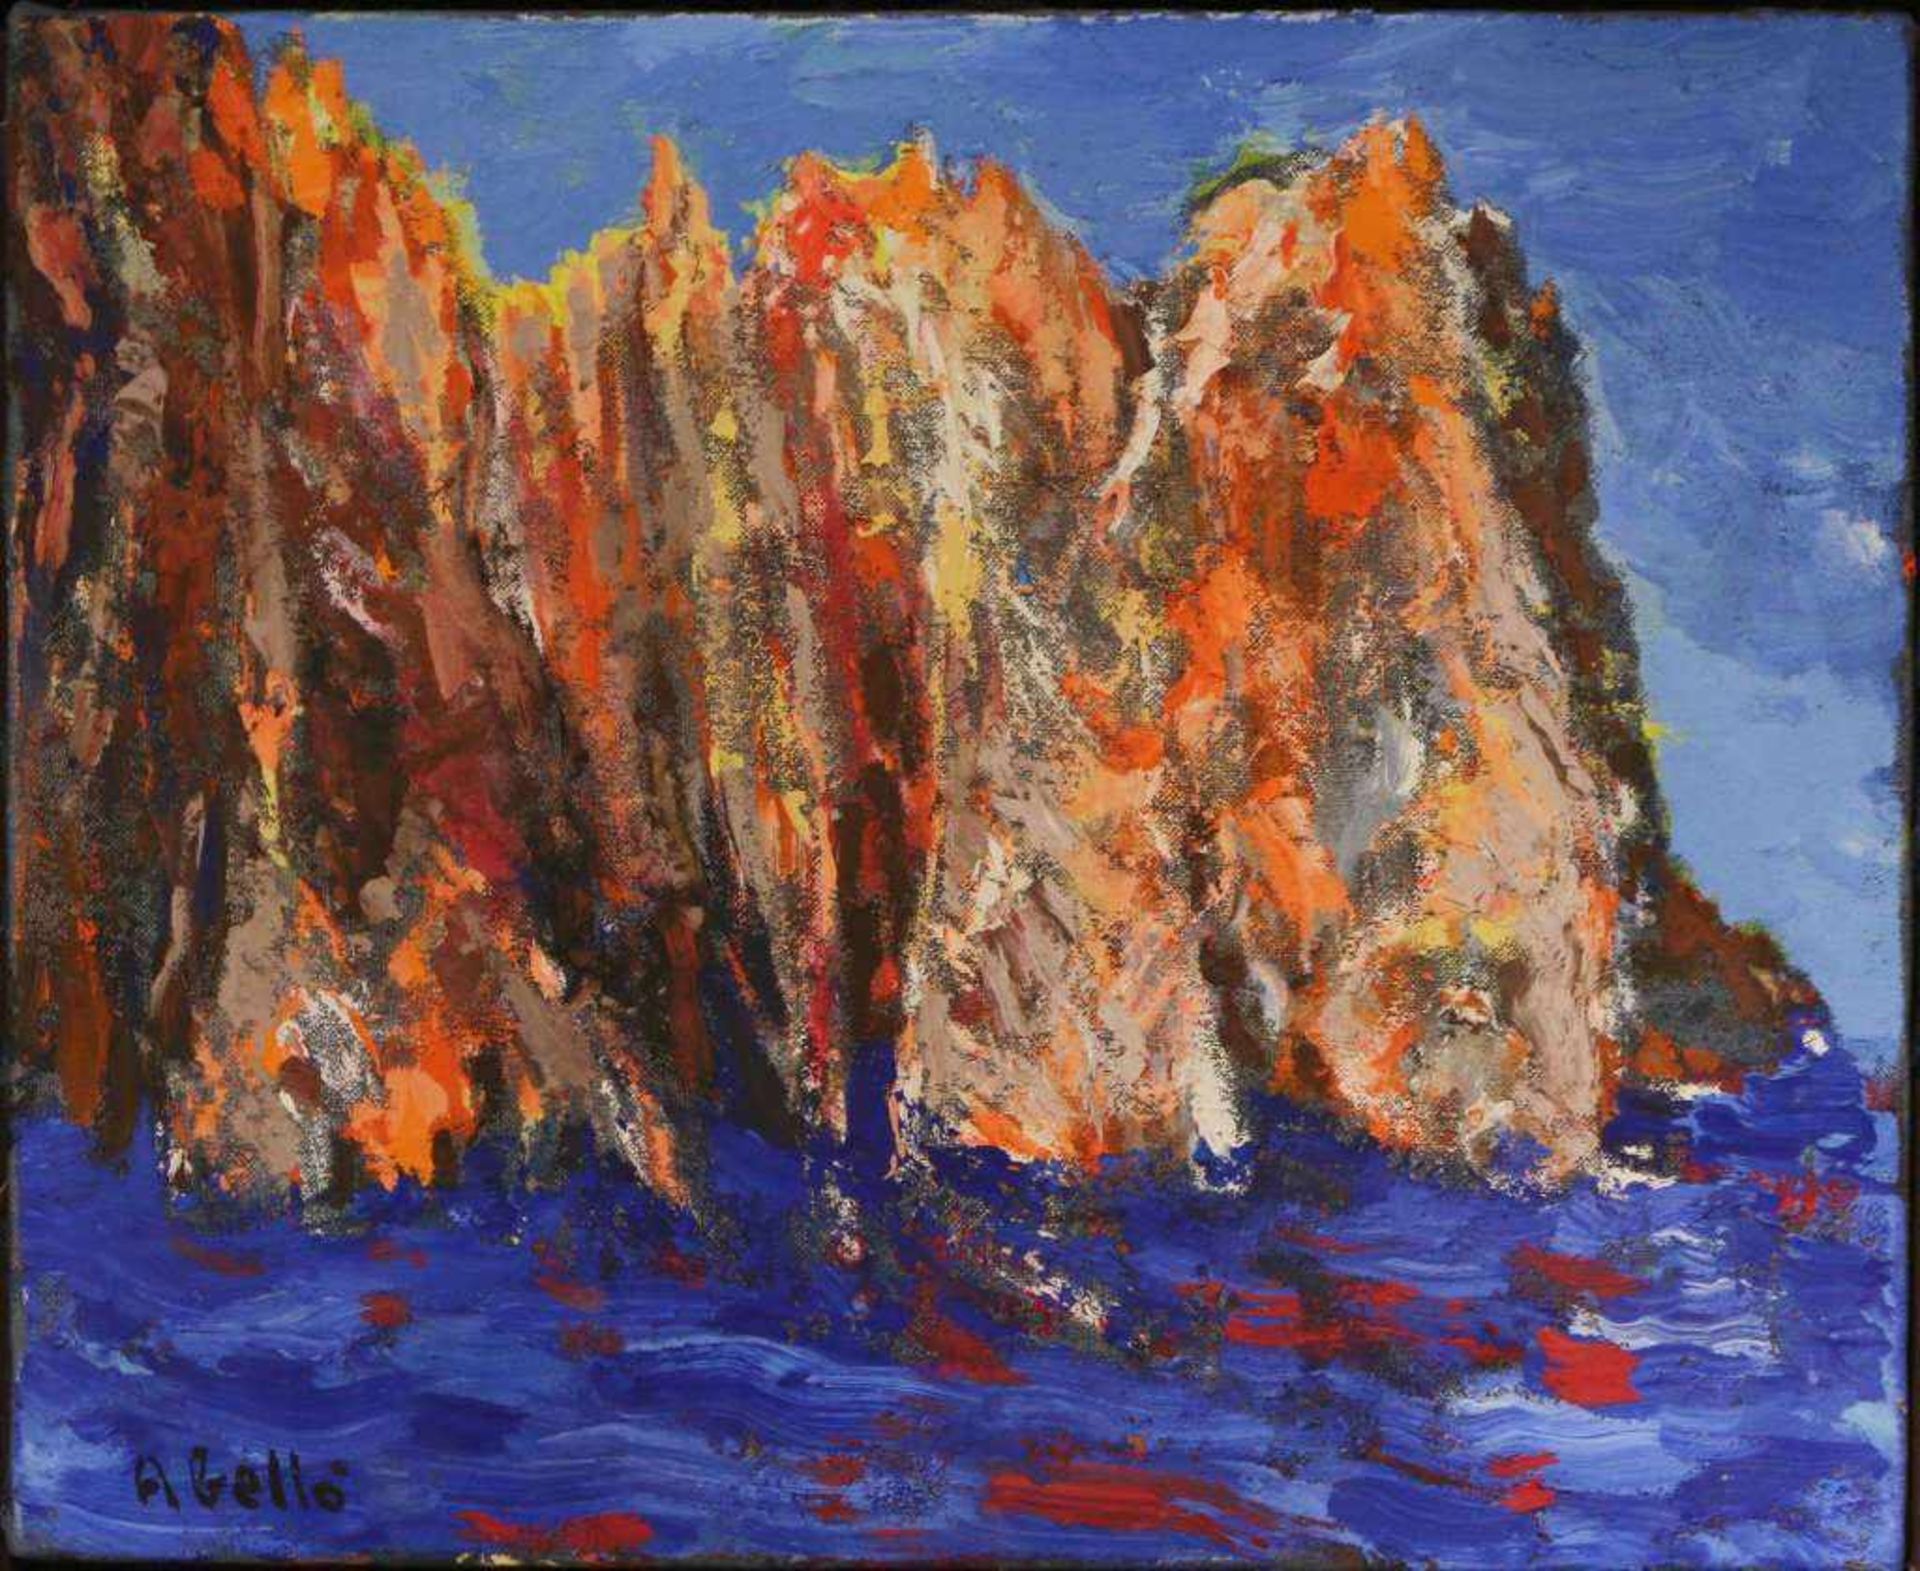 Juan ABELLO PRAT (1922-2008), Le Golfo de Porto, Öl auf Leinwand, u. re. sig., verso handschriftlich